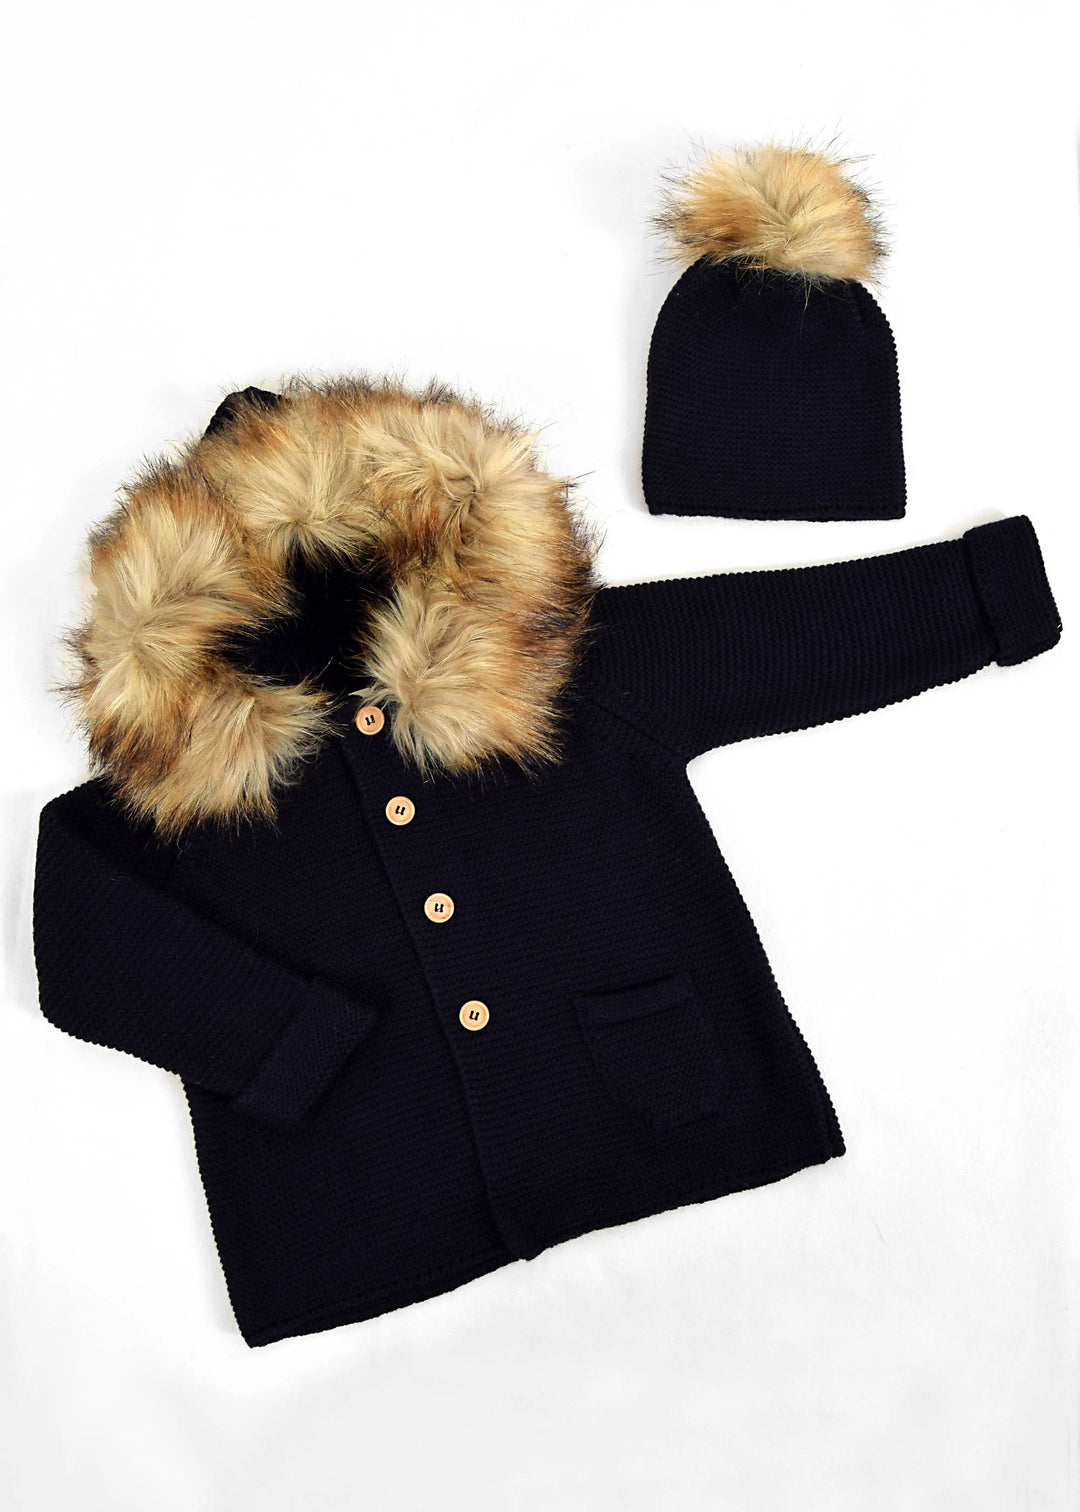 Coat with Natural Fur Hoodie With Natural Fur Cap